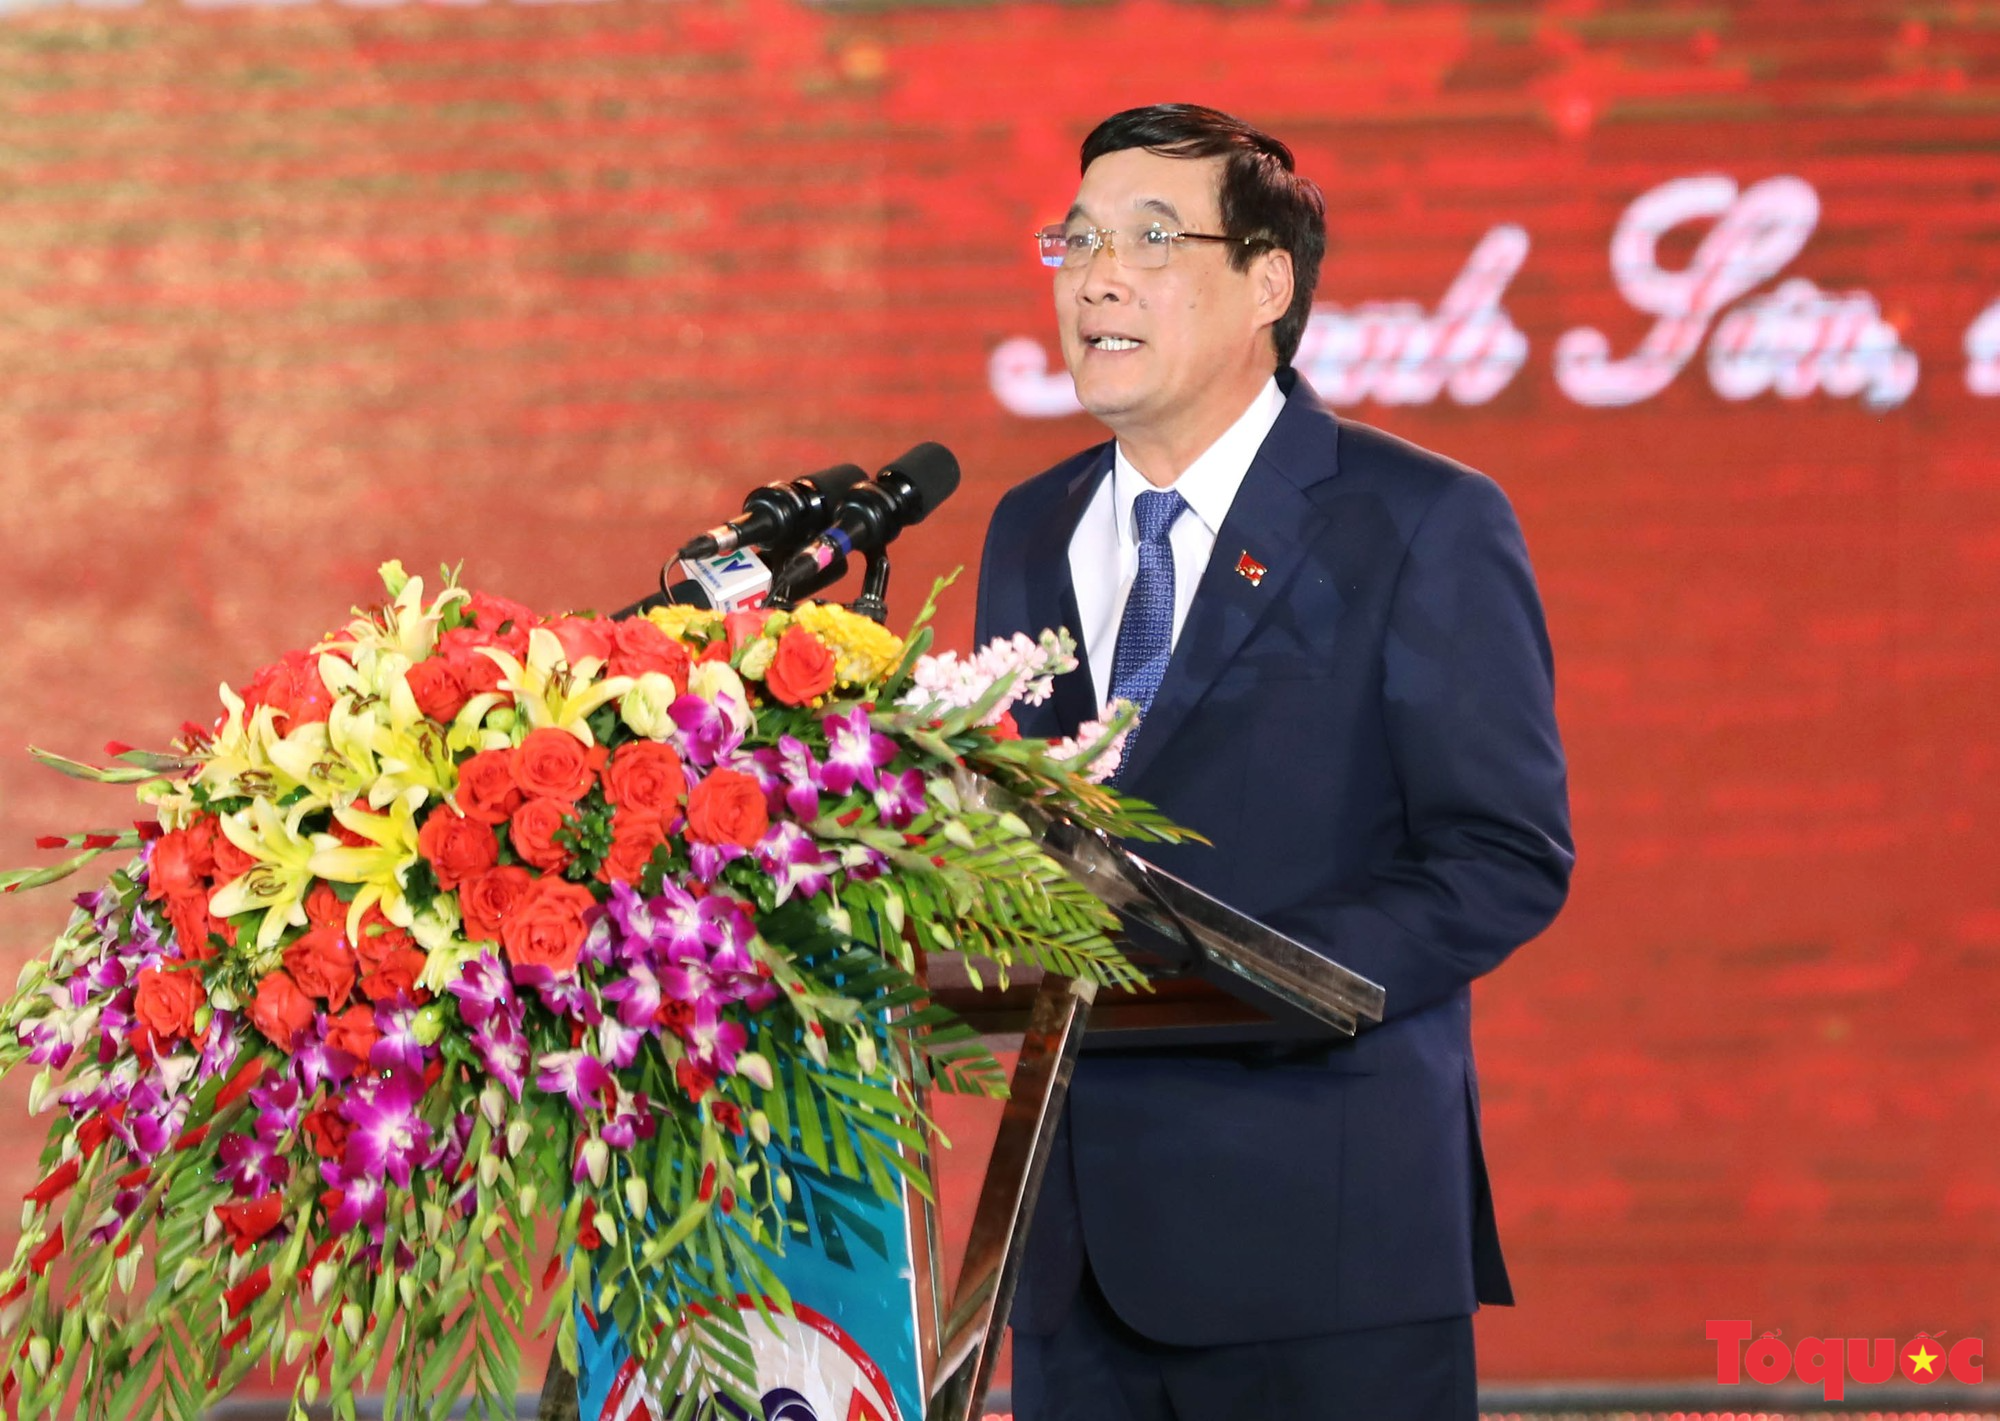 Phú Thọ kỷ niệm 190 năm thành lập huyện Thanh Sơn - Ảnh 5.